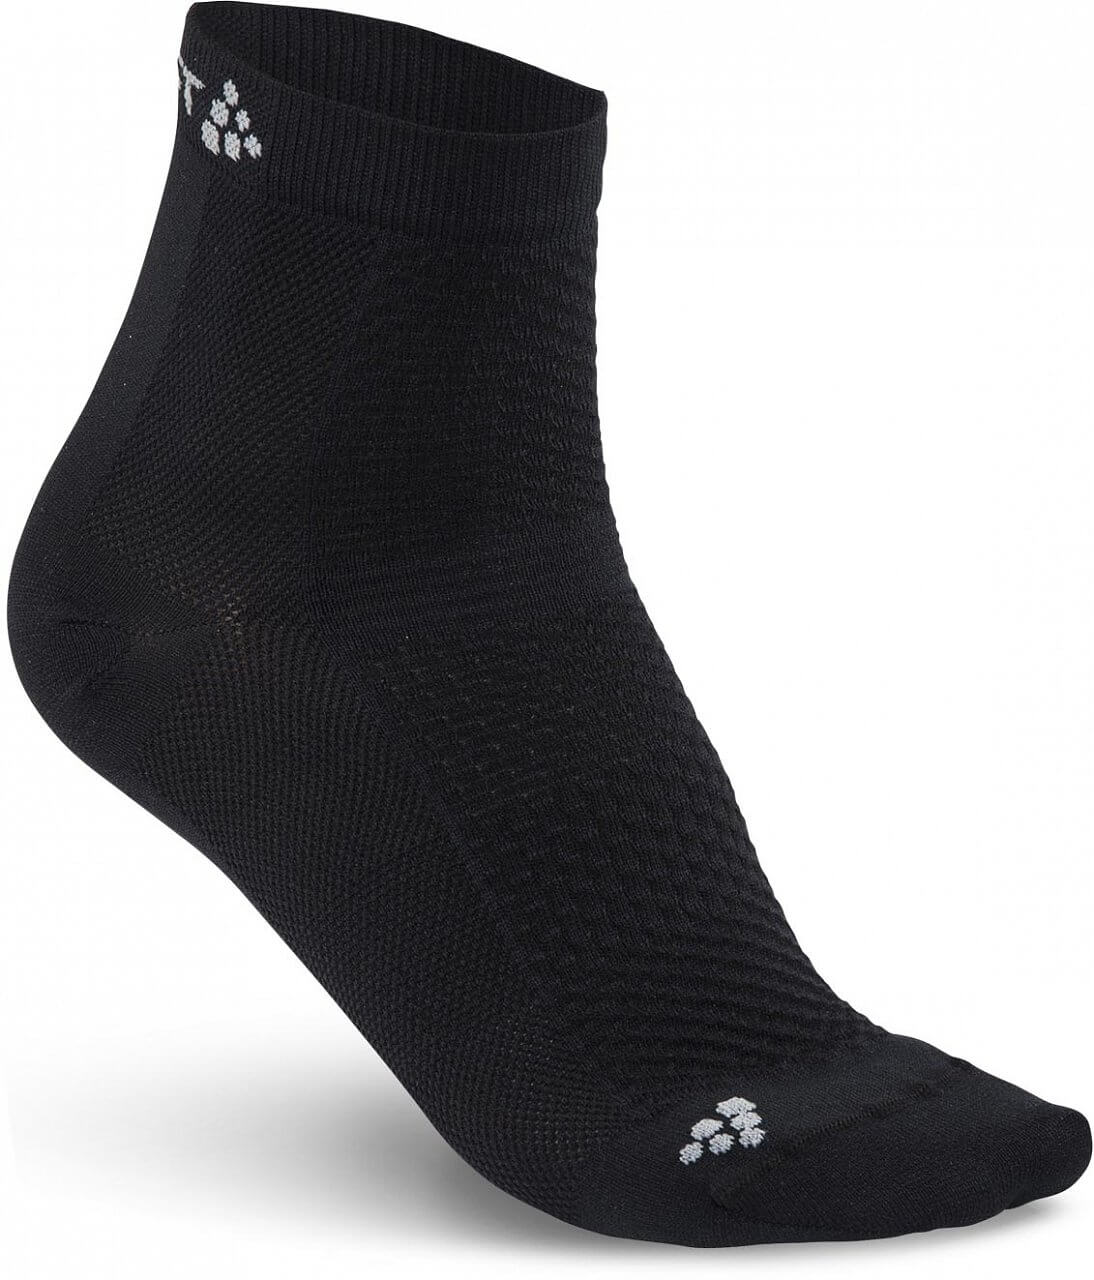 Ponožky Craft Ponožky Cool Mid 2-pack černá